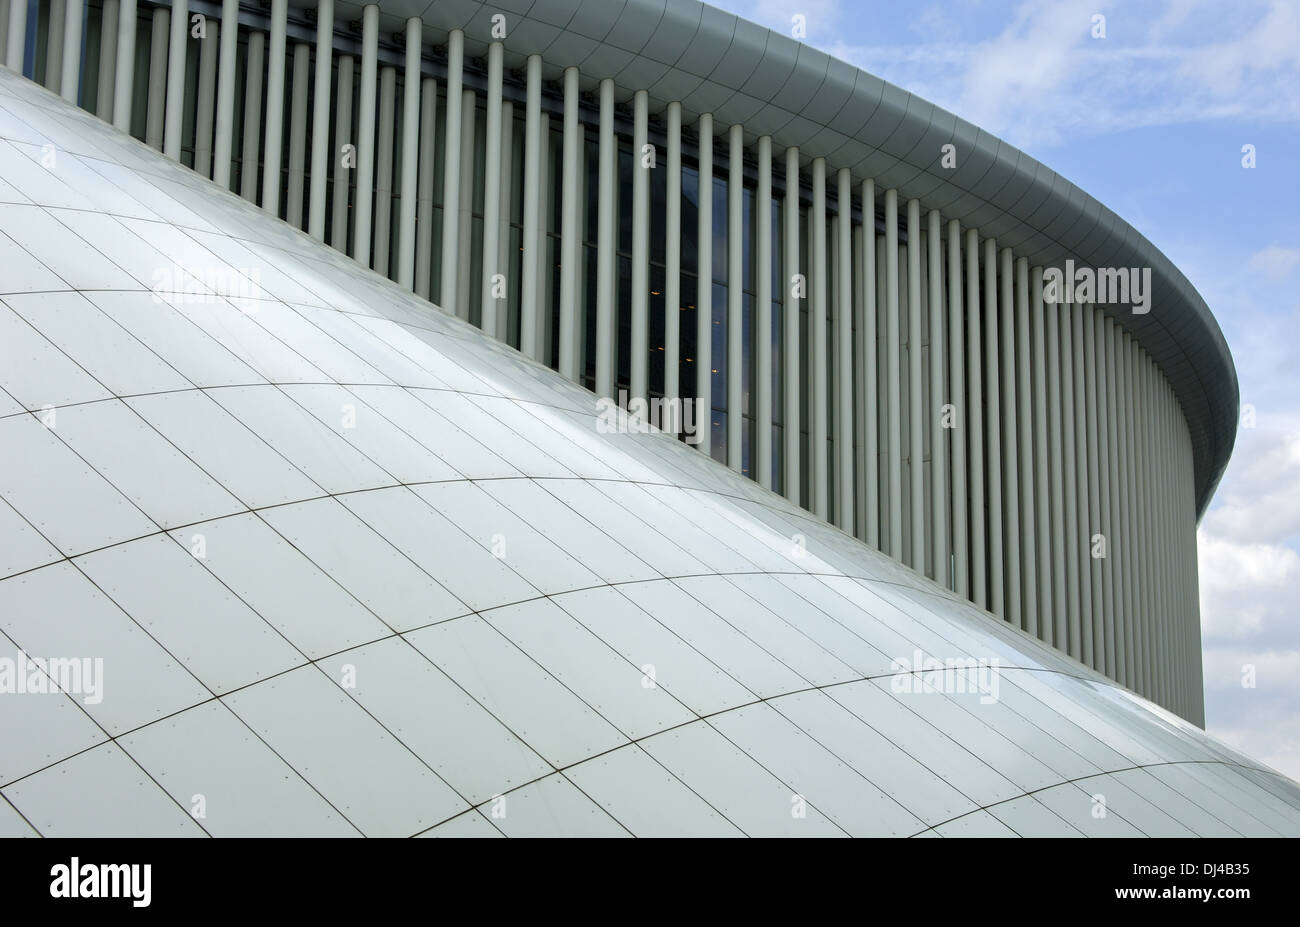 Dettagli architettonici, Philharmonie Luxembourg Foto Stock